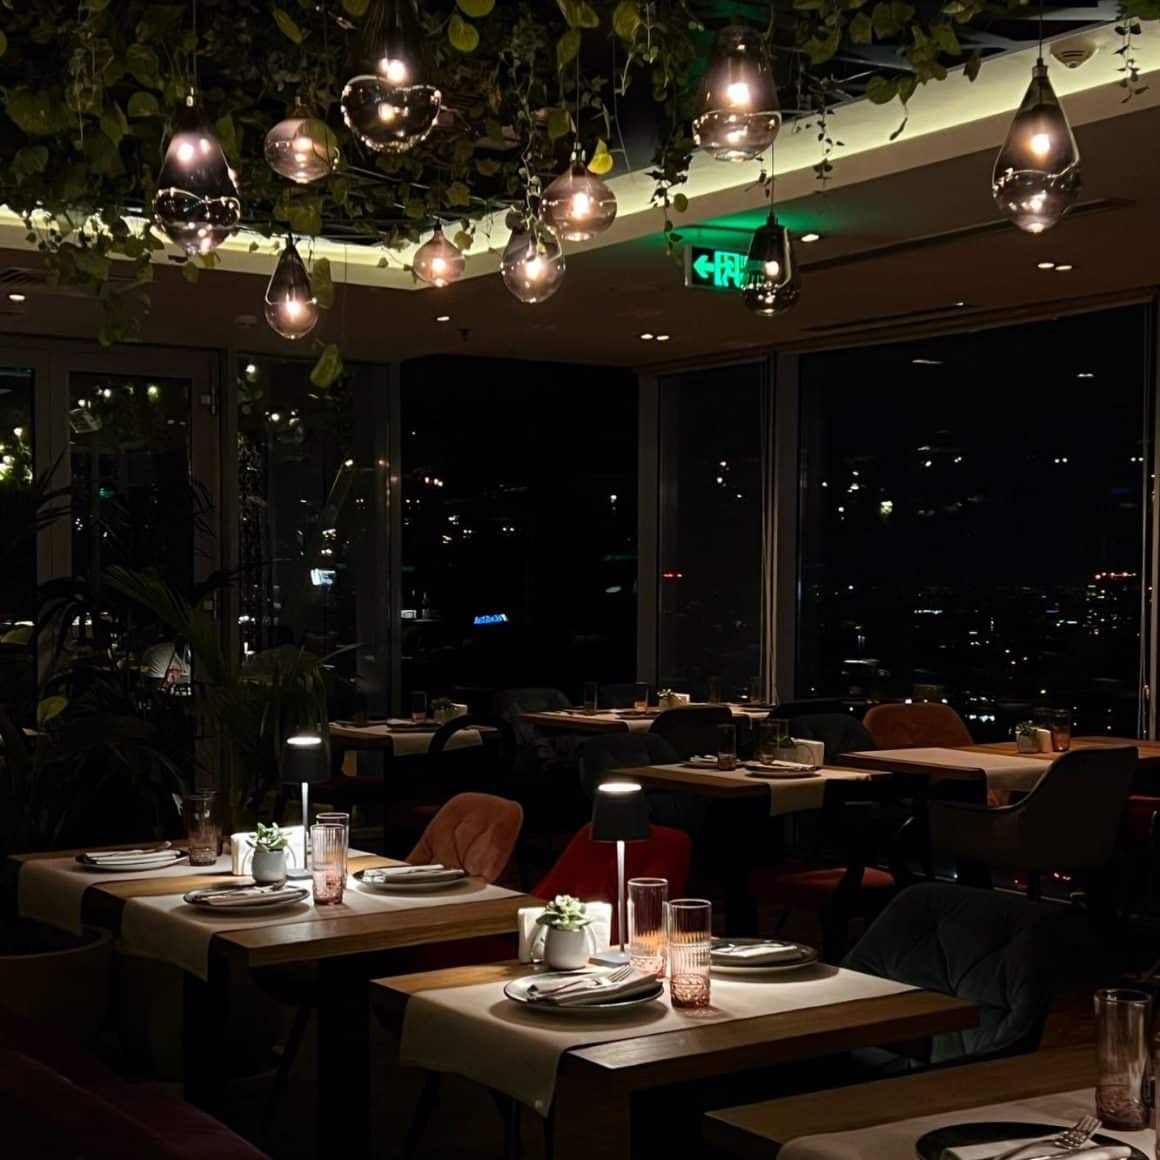 mese iluminate discret in restaurantul 18 Lounge, fotografiat seara, prin ferestrele caruia se vede orasul de sus